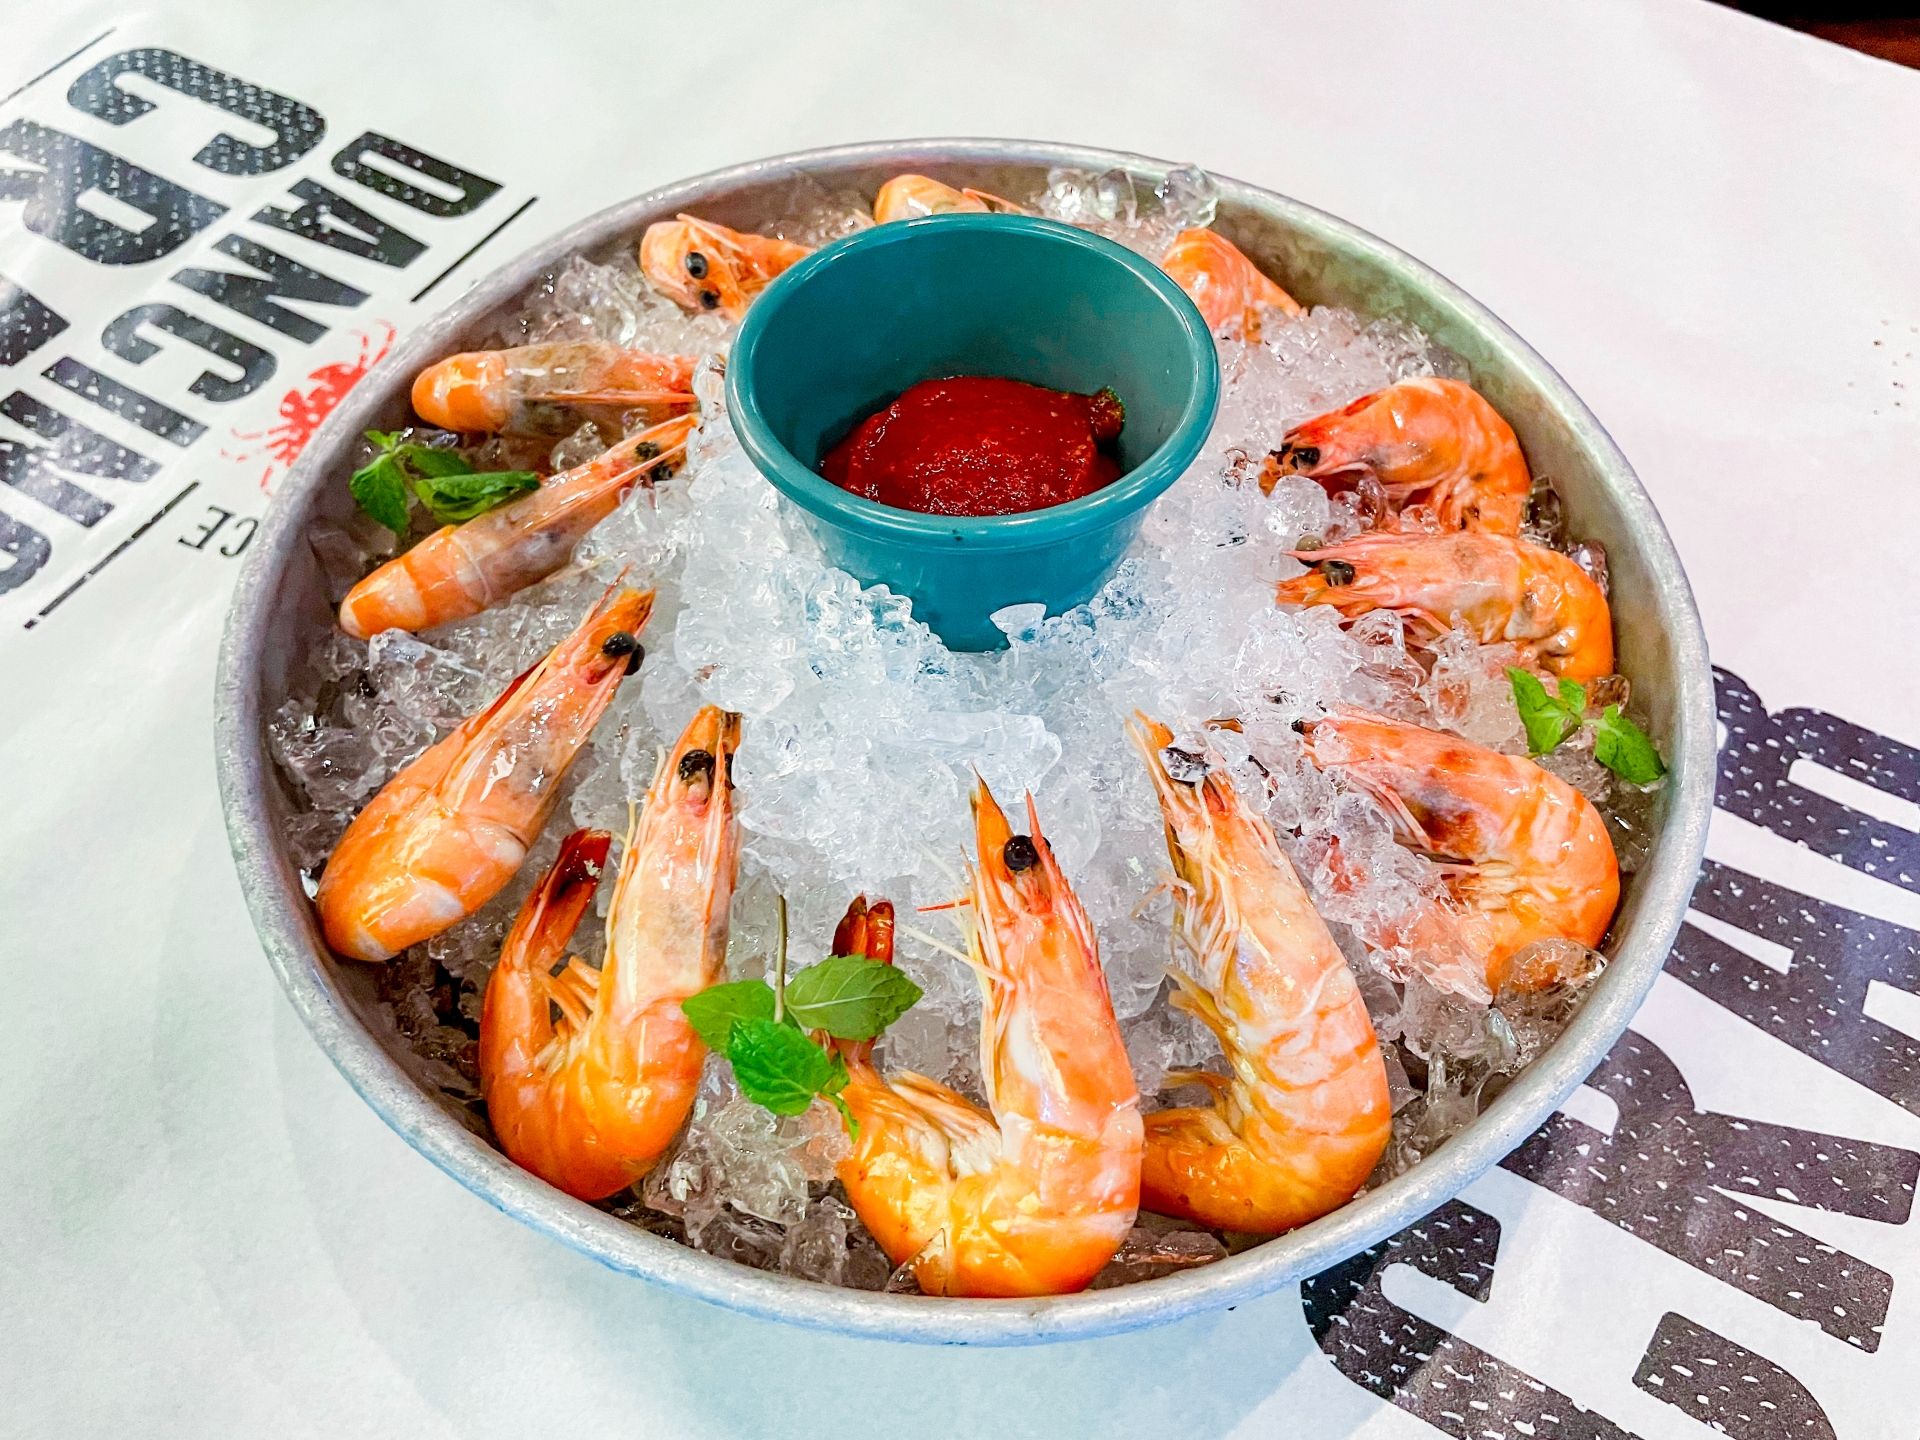 06_shrimp-cocktail